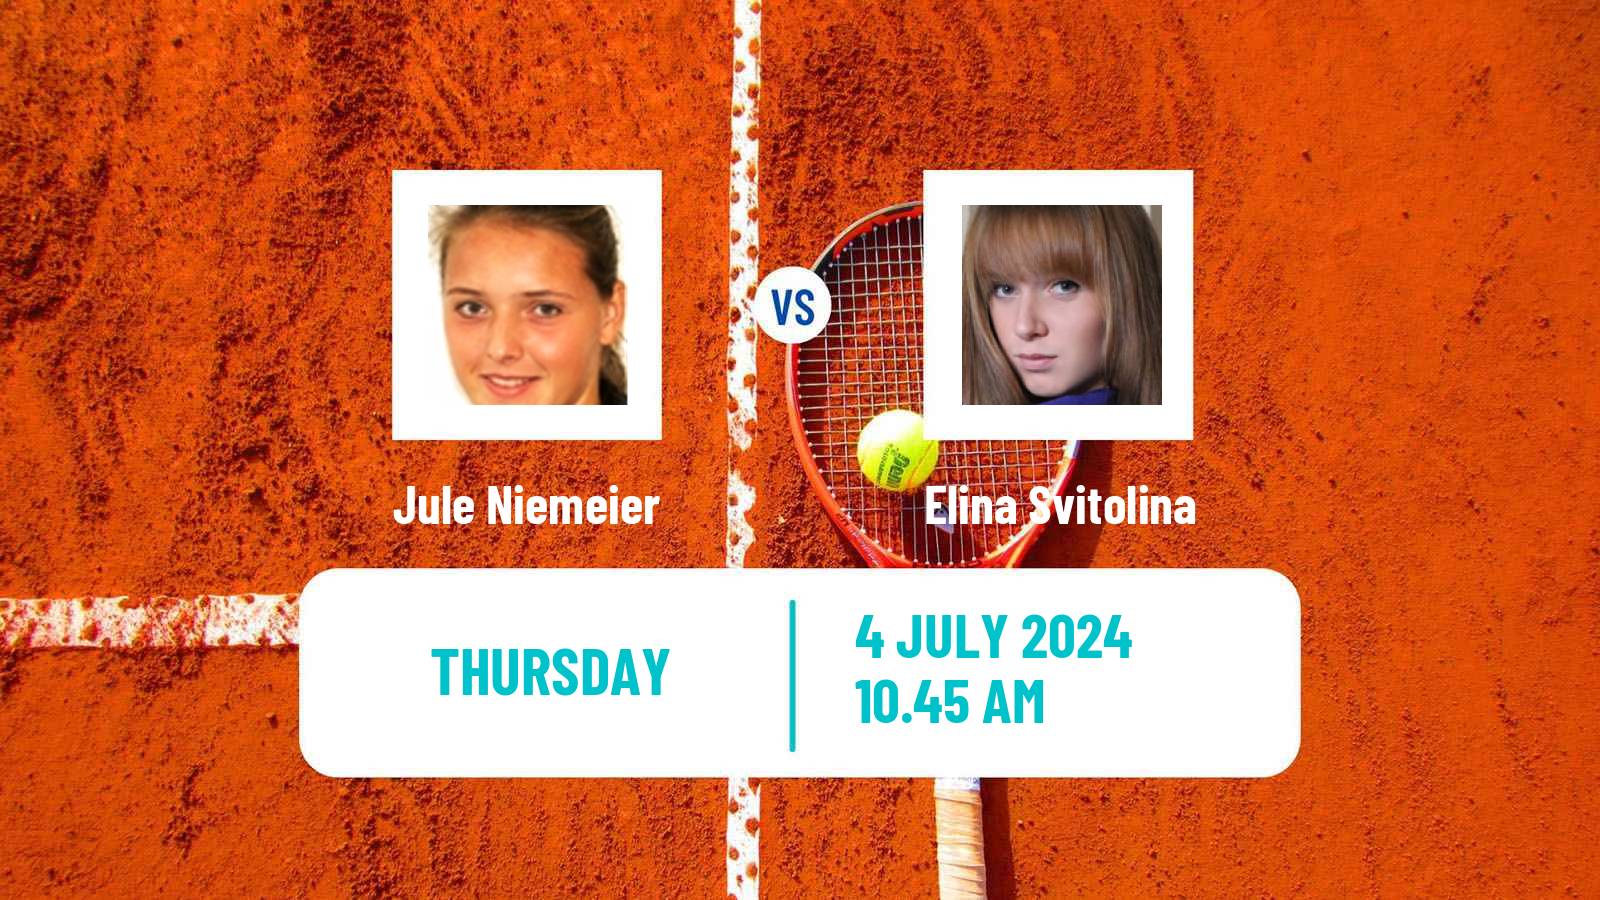 Tennis WTA Wimbledon Jule Niemeier - Elina Svitolina